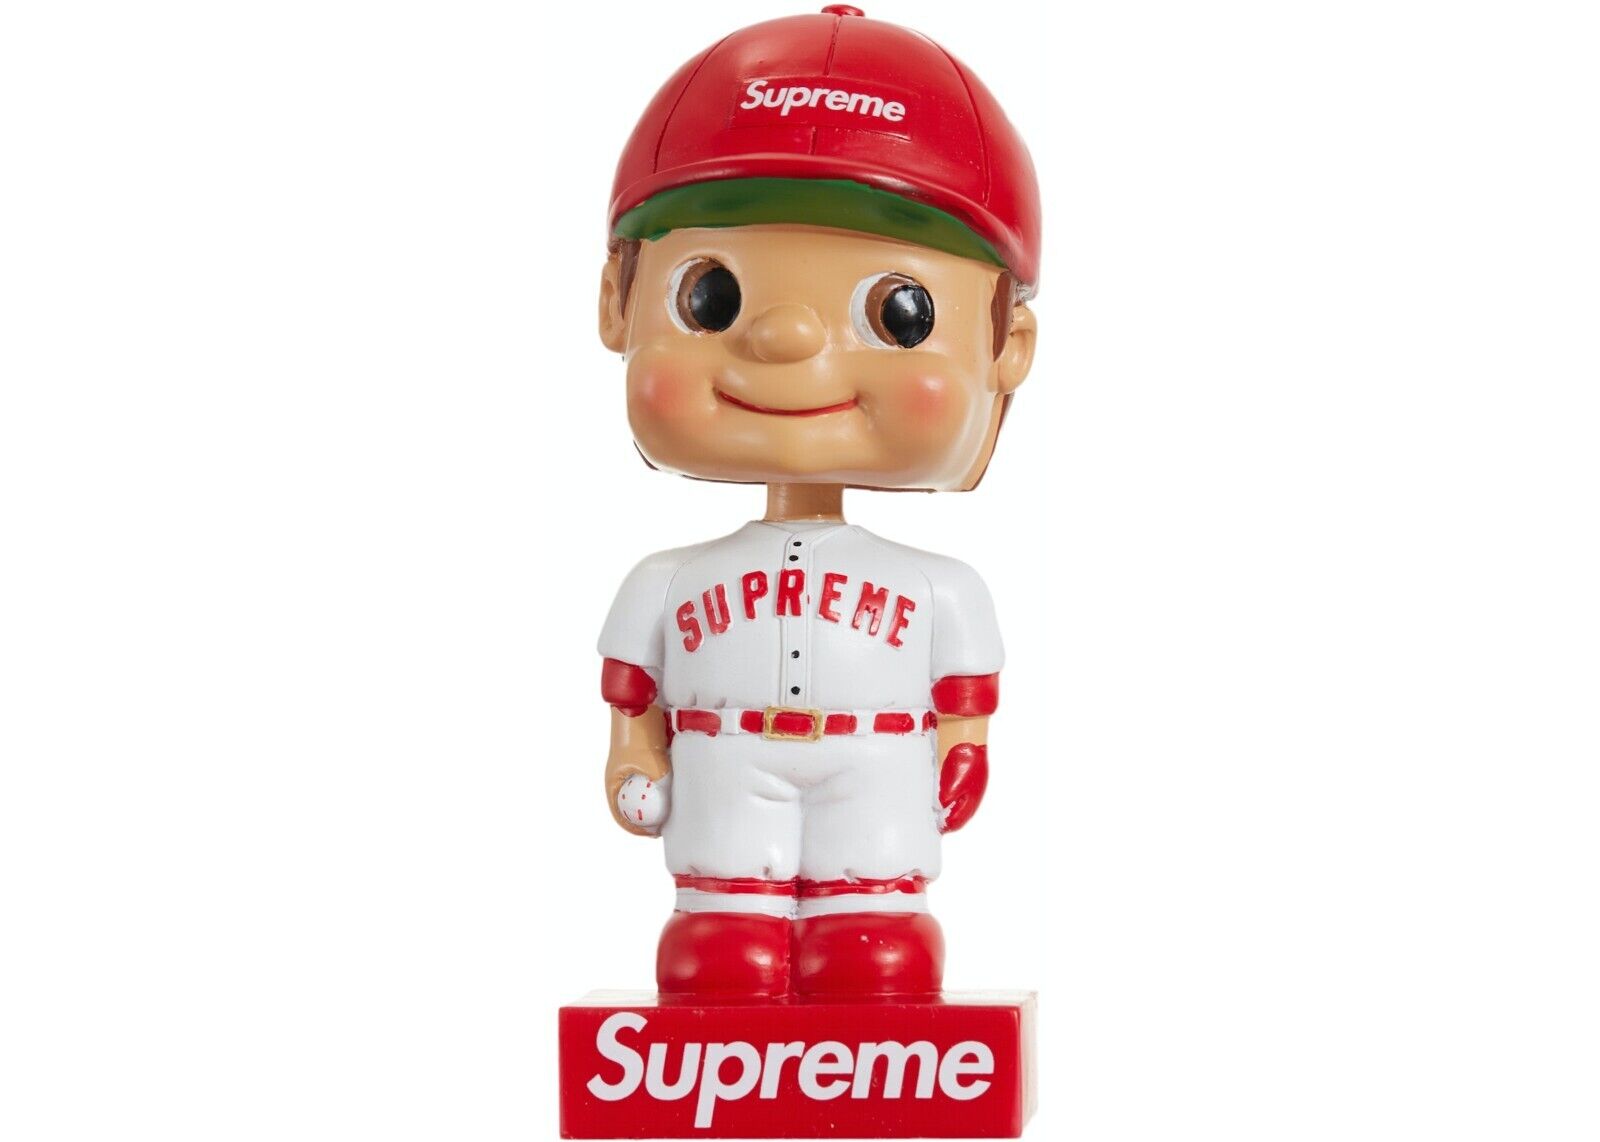 Supreme Bobblehead Figure Red - Brand New - Supreme Sticker Included